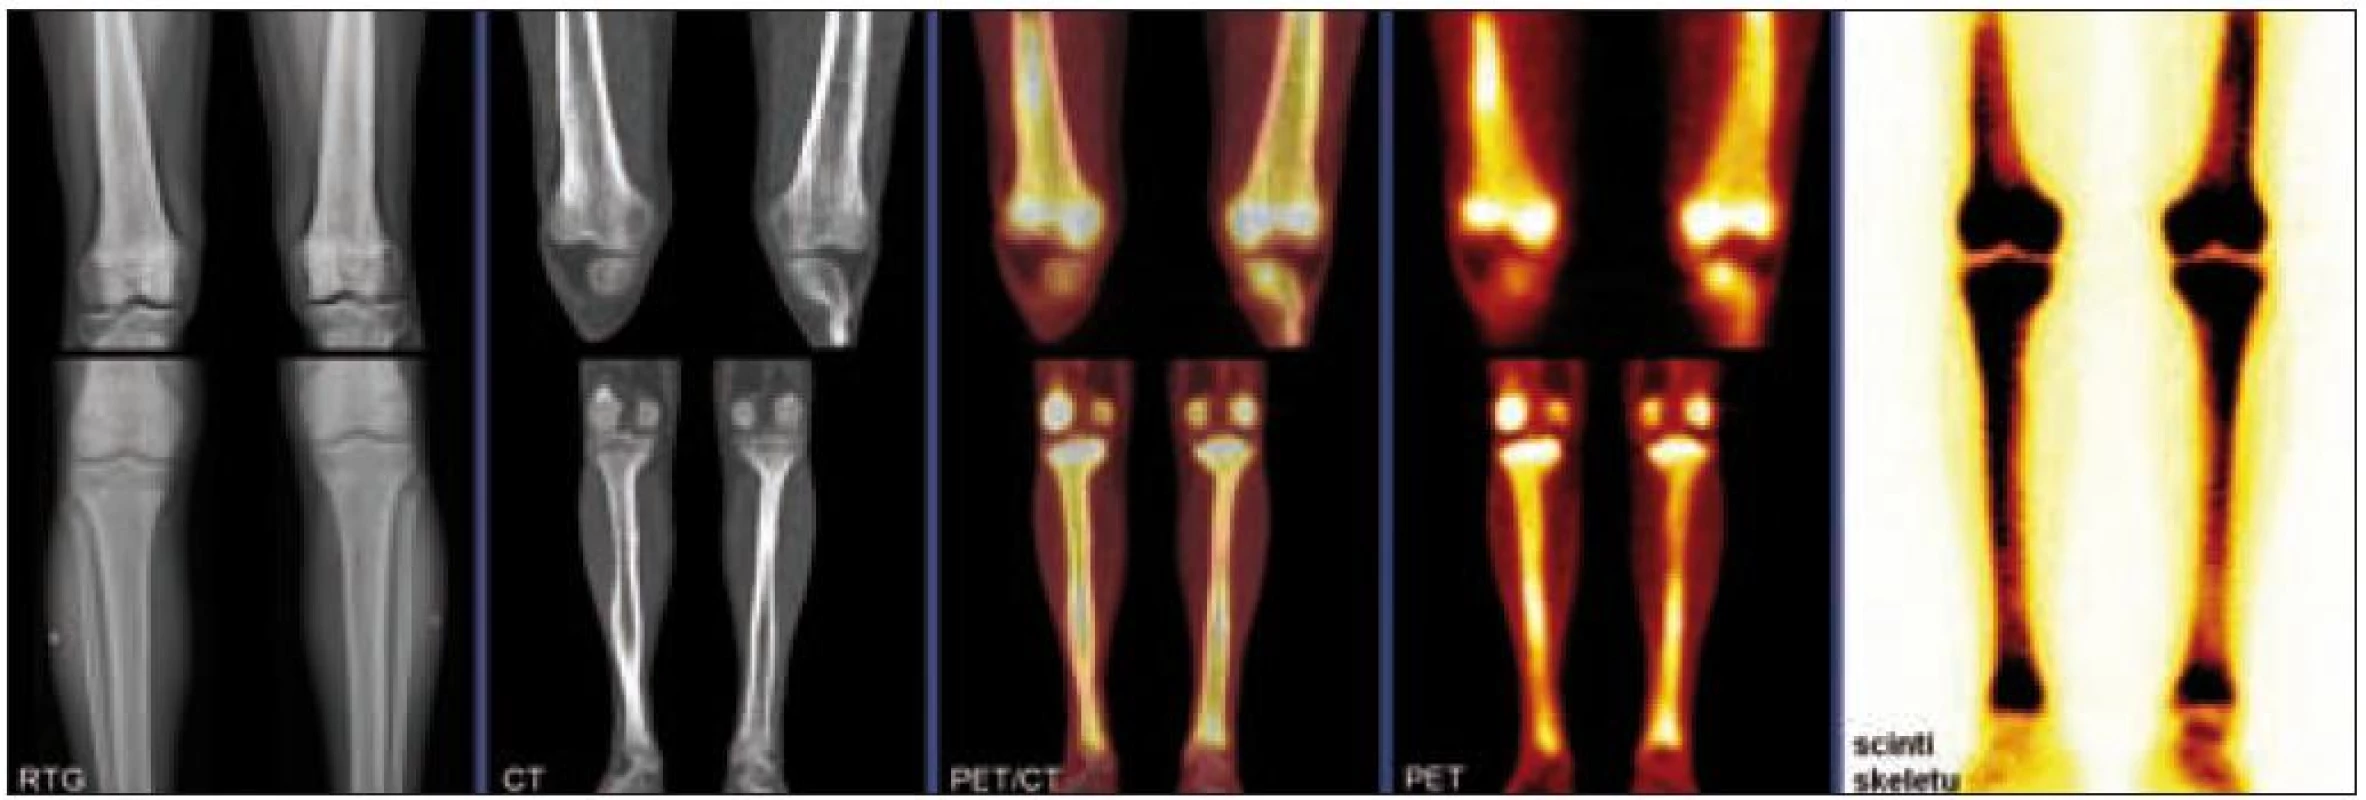 Postižení kostí dolních končetin u pacienta s Erdheimovou-Chesterovou chorobou, zobrazení pomocí konvenční radiografie (RTG), výpočetní tomografie (CT), pozitronové emisní tomografie (PET), hybridního PET/CT vyšetření a klasické kostní scintigrafie. Na RTG i CT je patrné oboustranné osteosklerotické postižení femorů a bércových kostí, které vykazuje patologický hypermetabolizmus glukózy na PET i zvýšenou akumulaci radiofarmaka (technecium pyrofosfátu) na scintigrafi i skeletu.